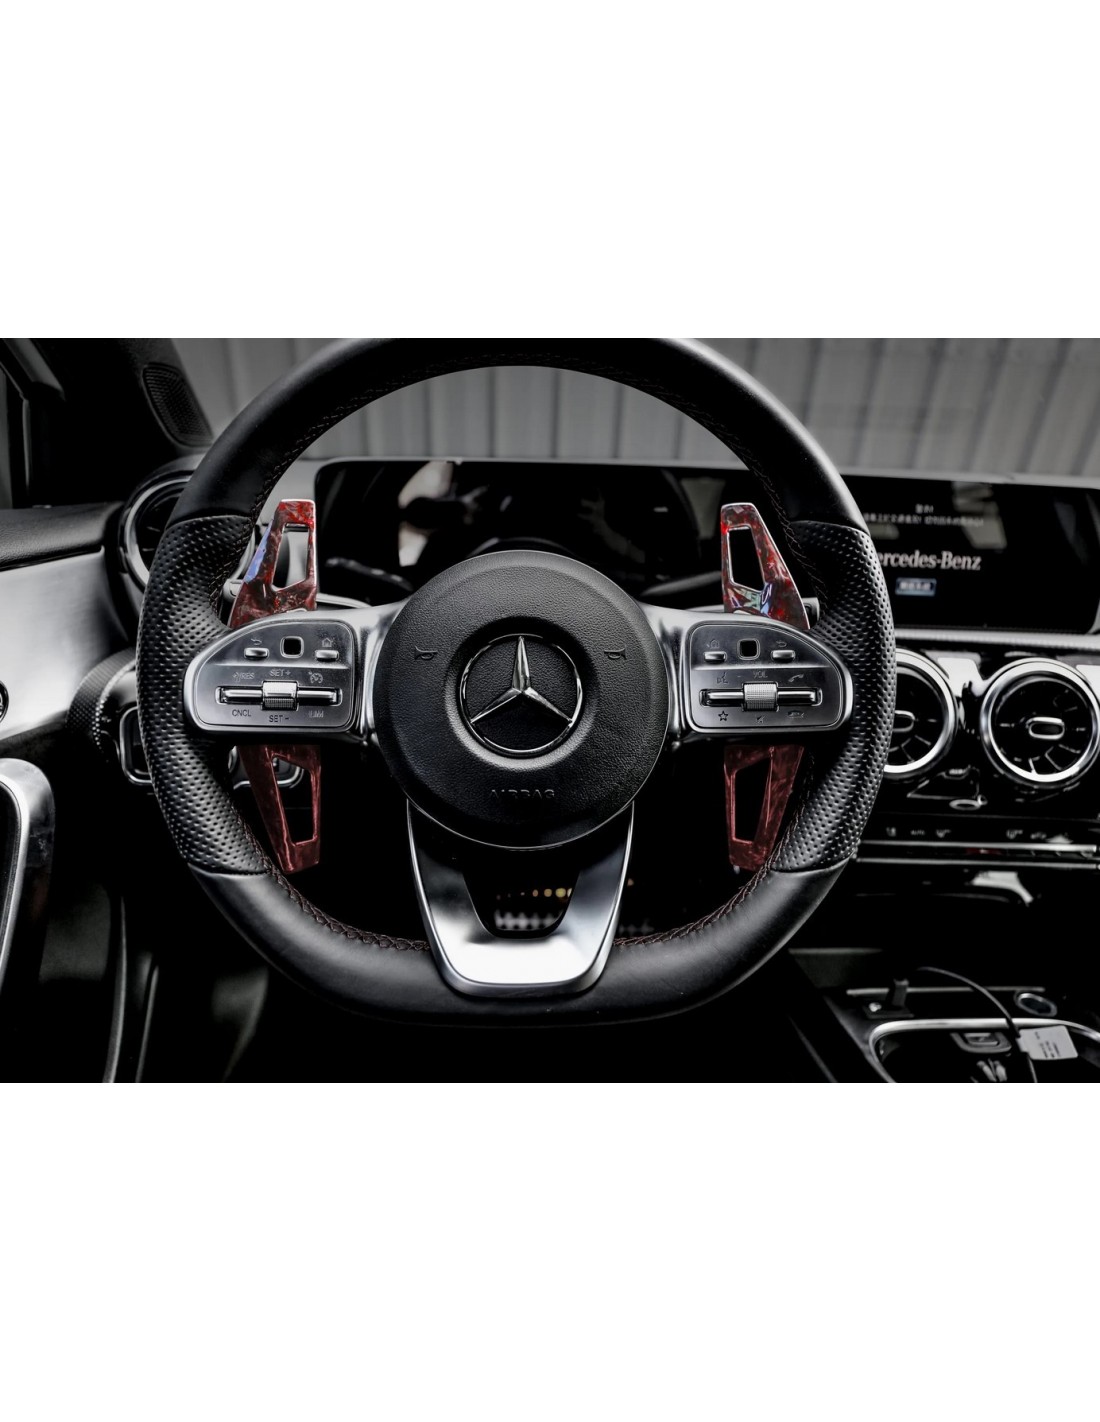 Arma Speed Carbon Schaltwippen für Mercedes Benz AMG Styling Lenkra